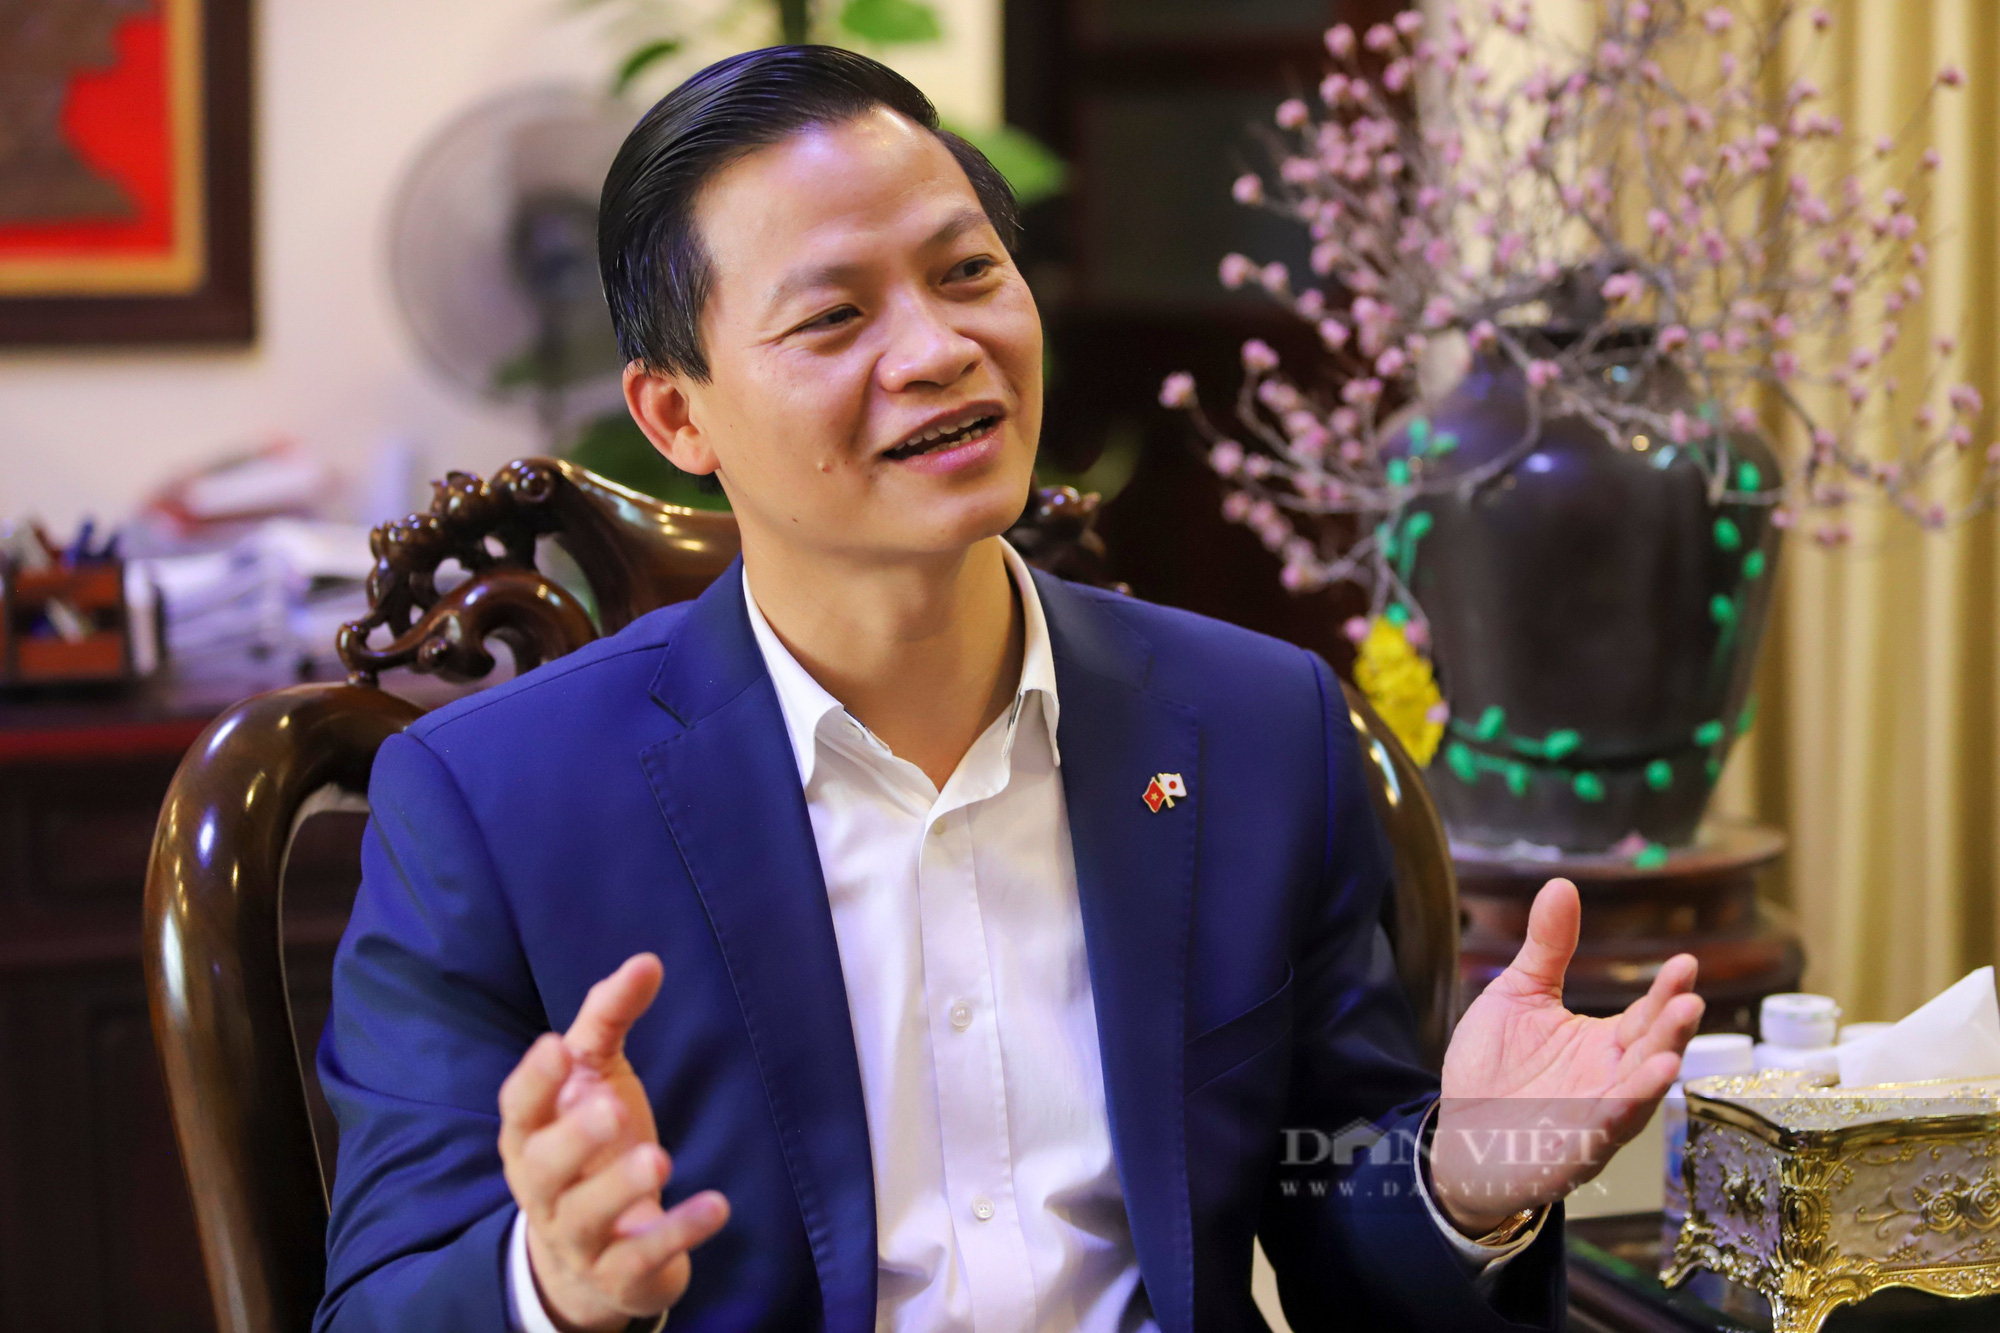 Phó Chủ tịch UBND tỉnh Bắc Ninh Vương Quốc Tuấn: Bắc Ninh sẽ sớm trở thành trung tâm công nghiệp điện tử hàng đầu - Ảnh 4.